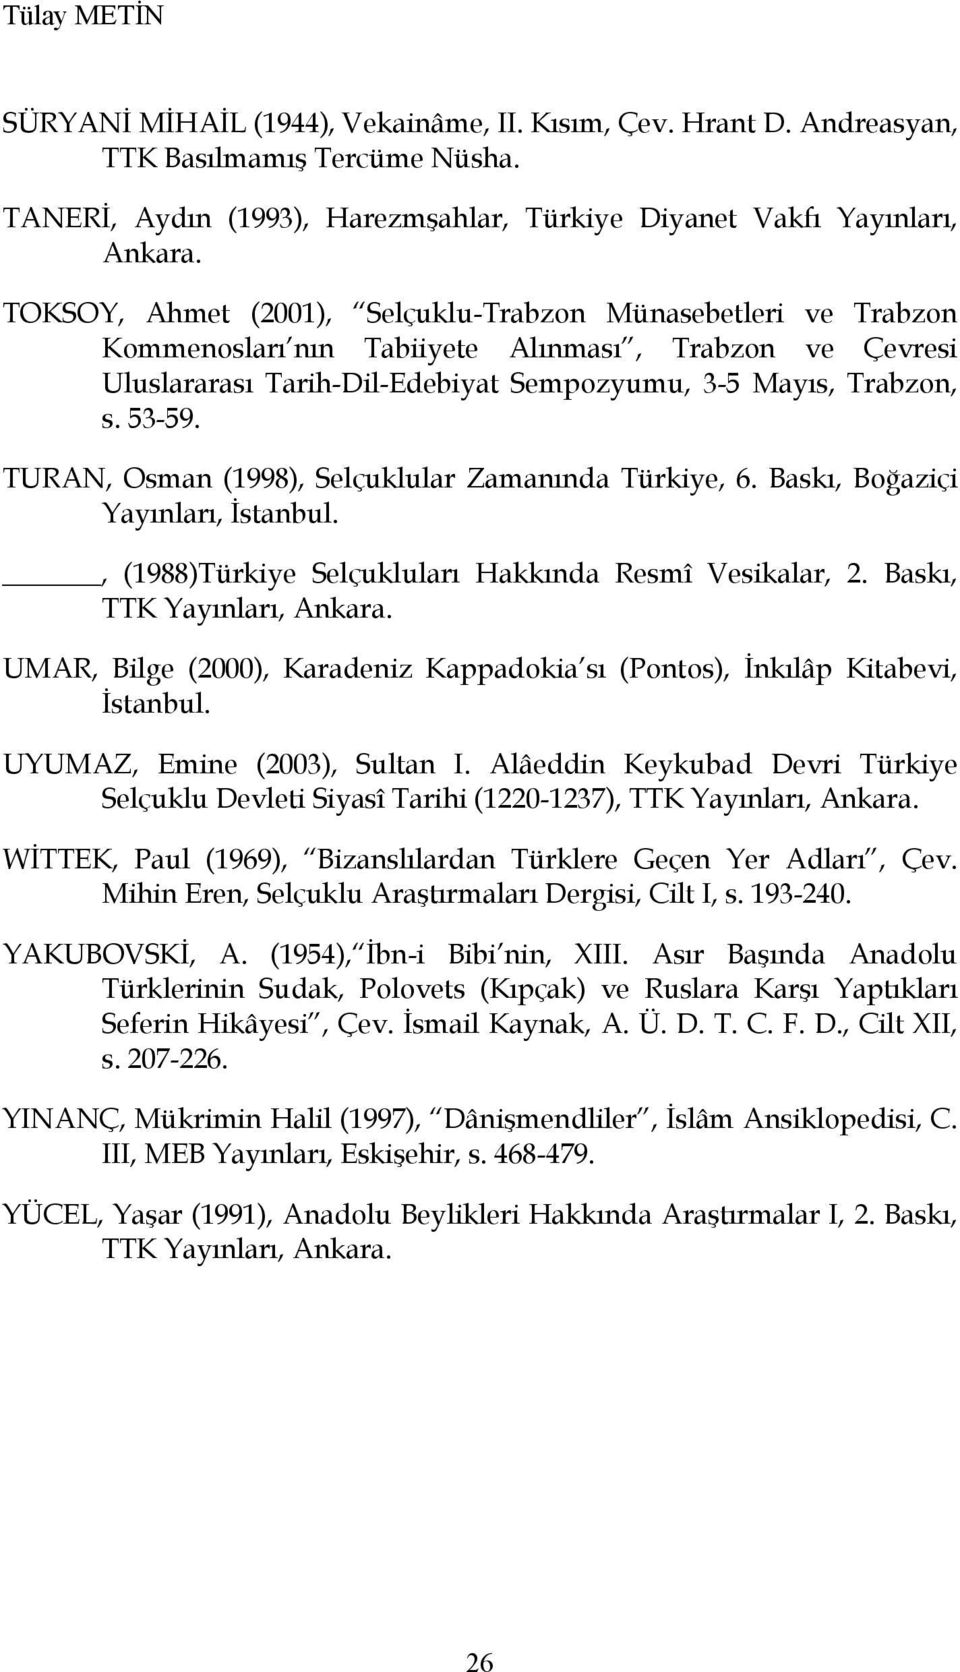 TURAN, Osman (1998), Selçuklular Zamanında Türkiye, 6. Baskı, Boğaziçi Yayınları, İstanbul., (1988)Türkiye Selçukluları Hakkında Resmî Vesikalar, 2. Baskı, TTK Yayınları, Ankara.